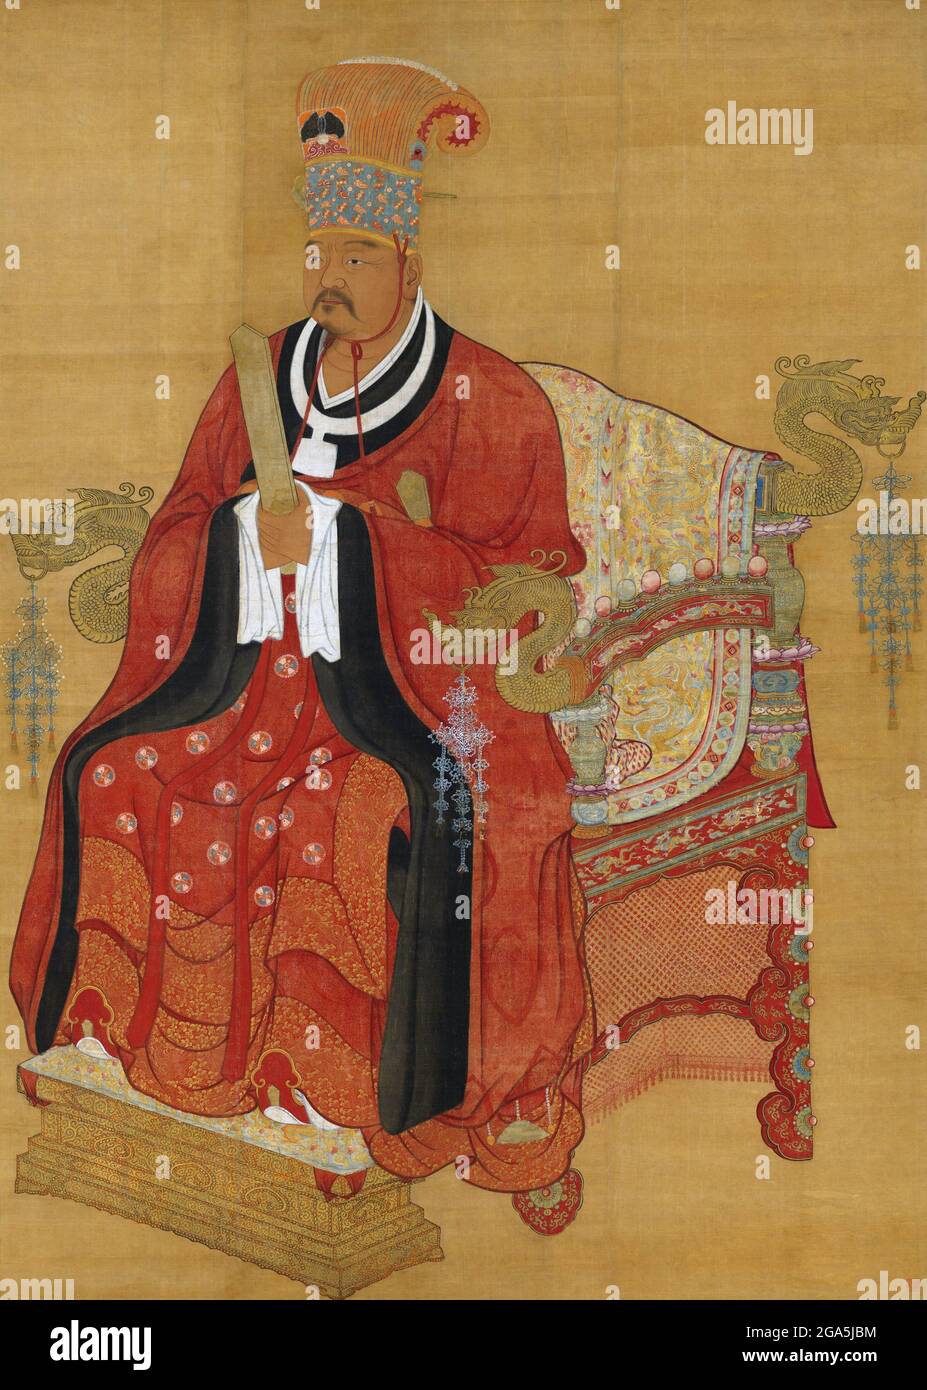 Chine : l'empereur Xuanzu (Zhao Hongyi, 899-956), père des deux premiers empereurs de la chanson Taizu et Taizong, honorés à titre posthume comme ancêtre fondateur de la dynastie Song. Peinture à défilement suspendu, Song Dynasty (960-1279). Zhao Hongyi (899-956) était le père de Song Emperors Taizu (r. 960-976) et Taizong (976-997). Il a été général militaire pendant la période des cinq dynasties et des dix royaumes, servant sous l'empereur Zhuangzong de plus tard Tang. On dit qu'il était un cheval qualifié archer. Banque D'Images